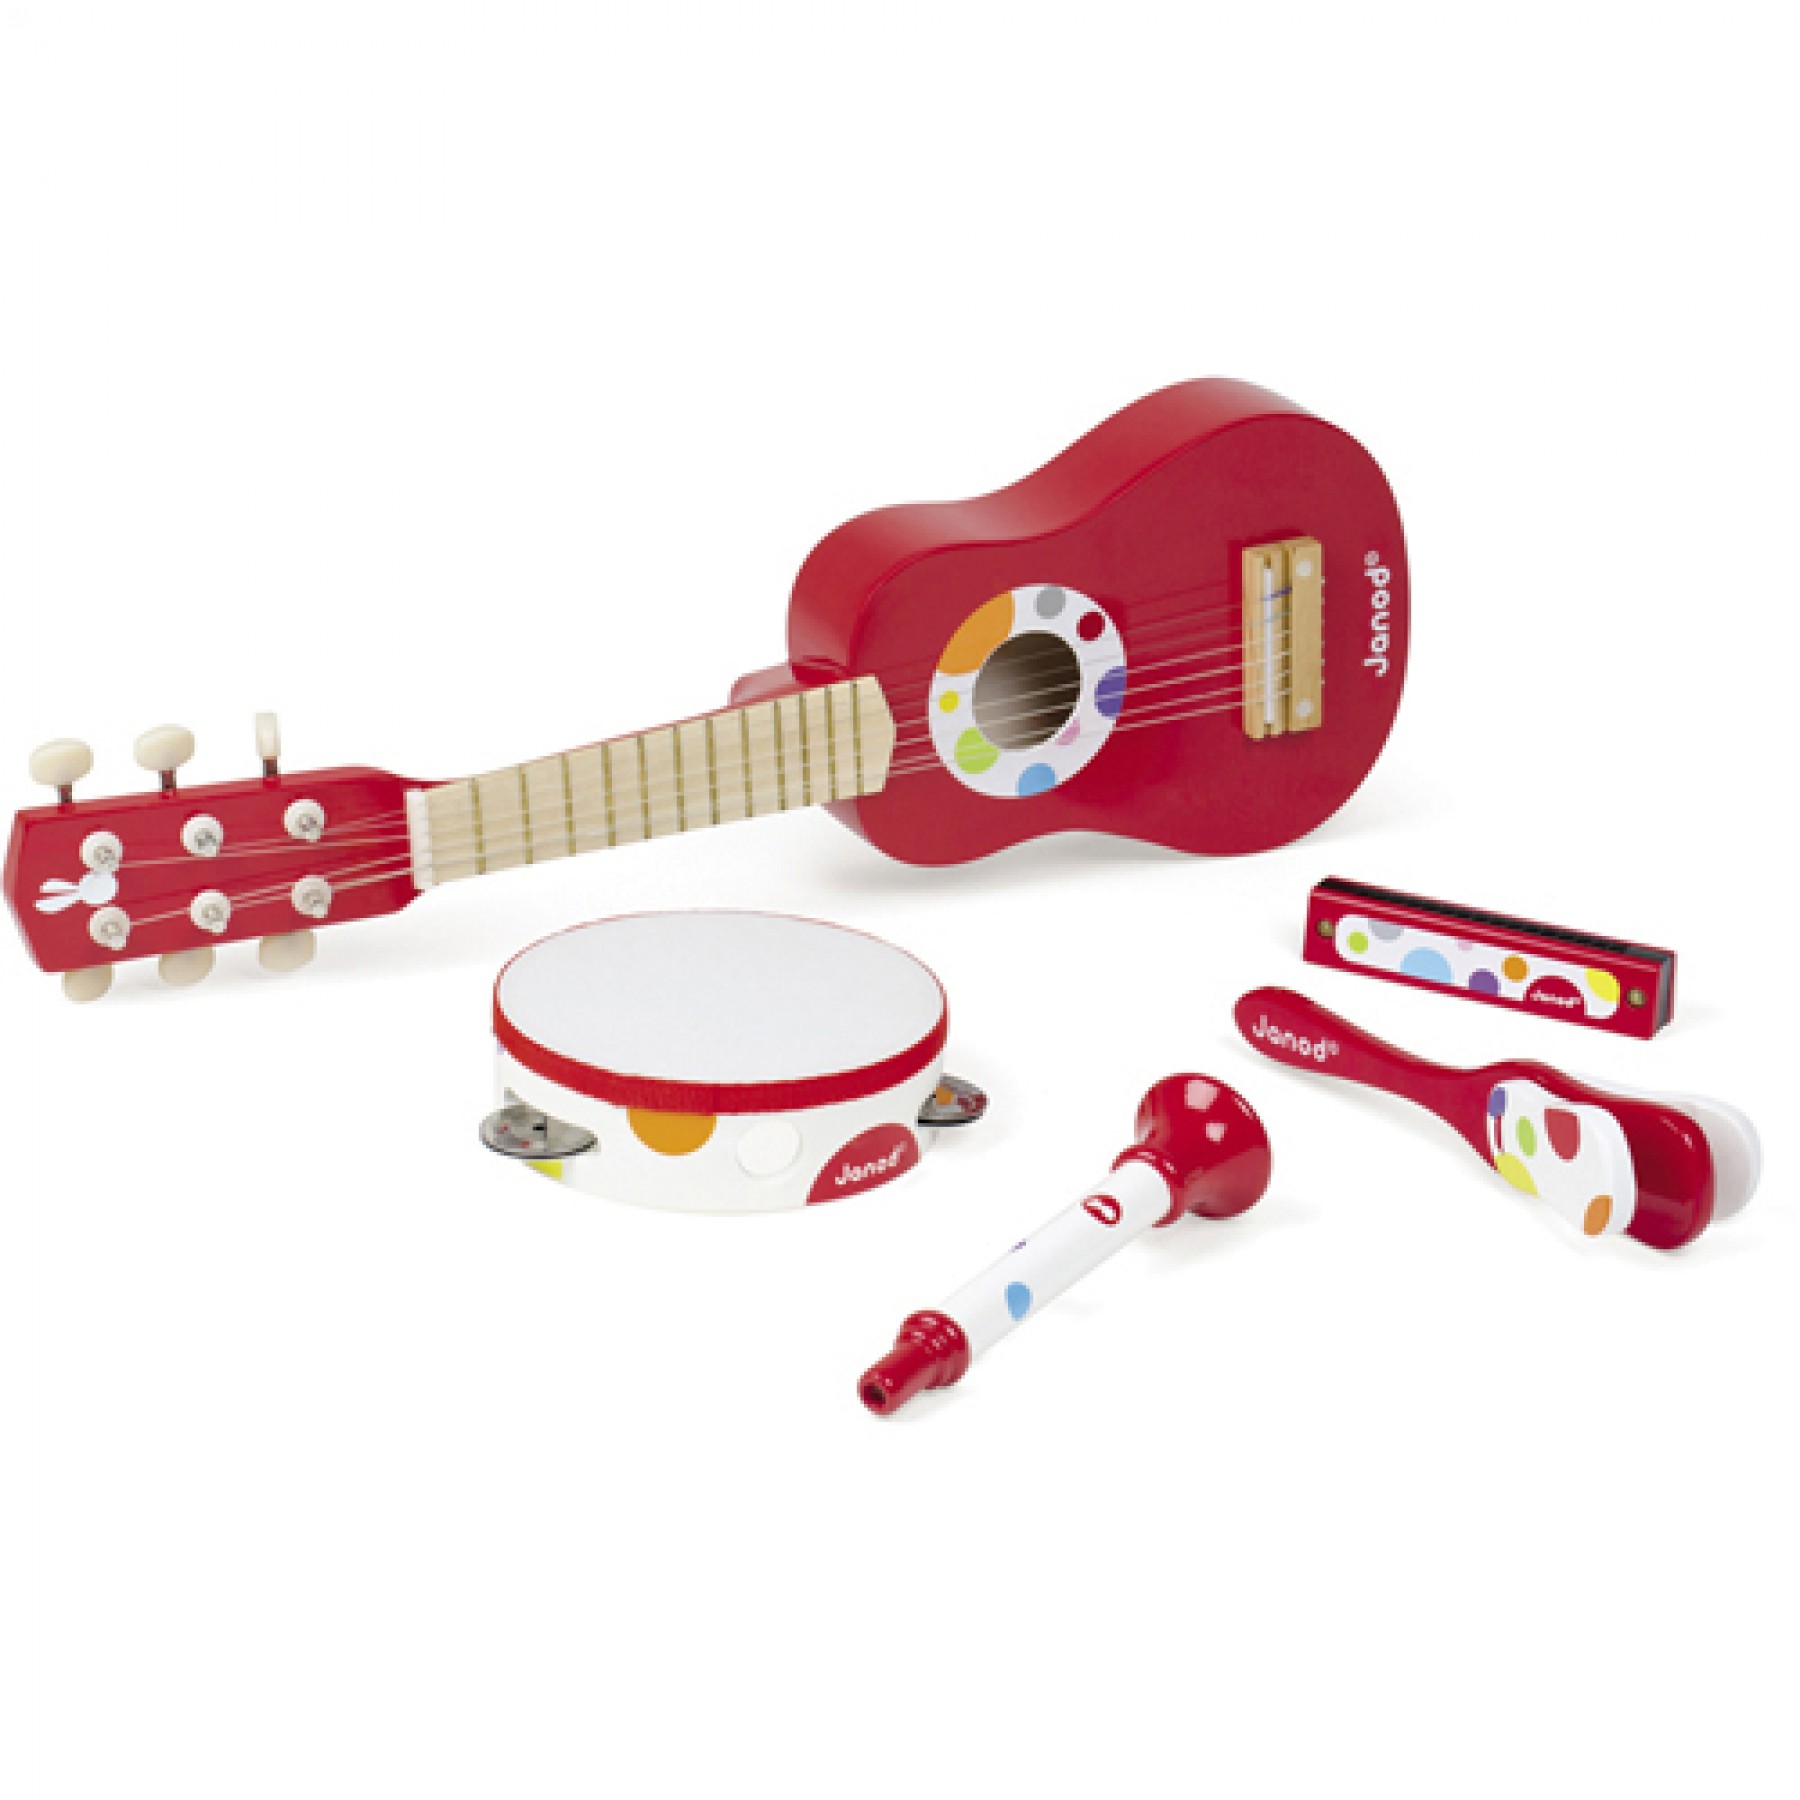 Набор красных музыкальных инструментов - гитара, бубен, губная гармошка, дудочка, трещотка